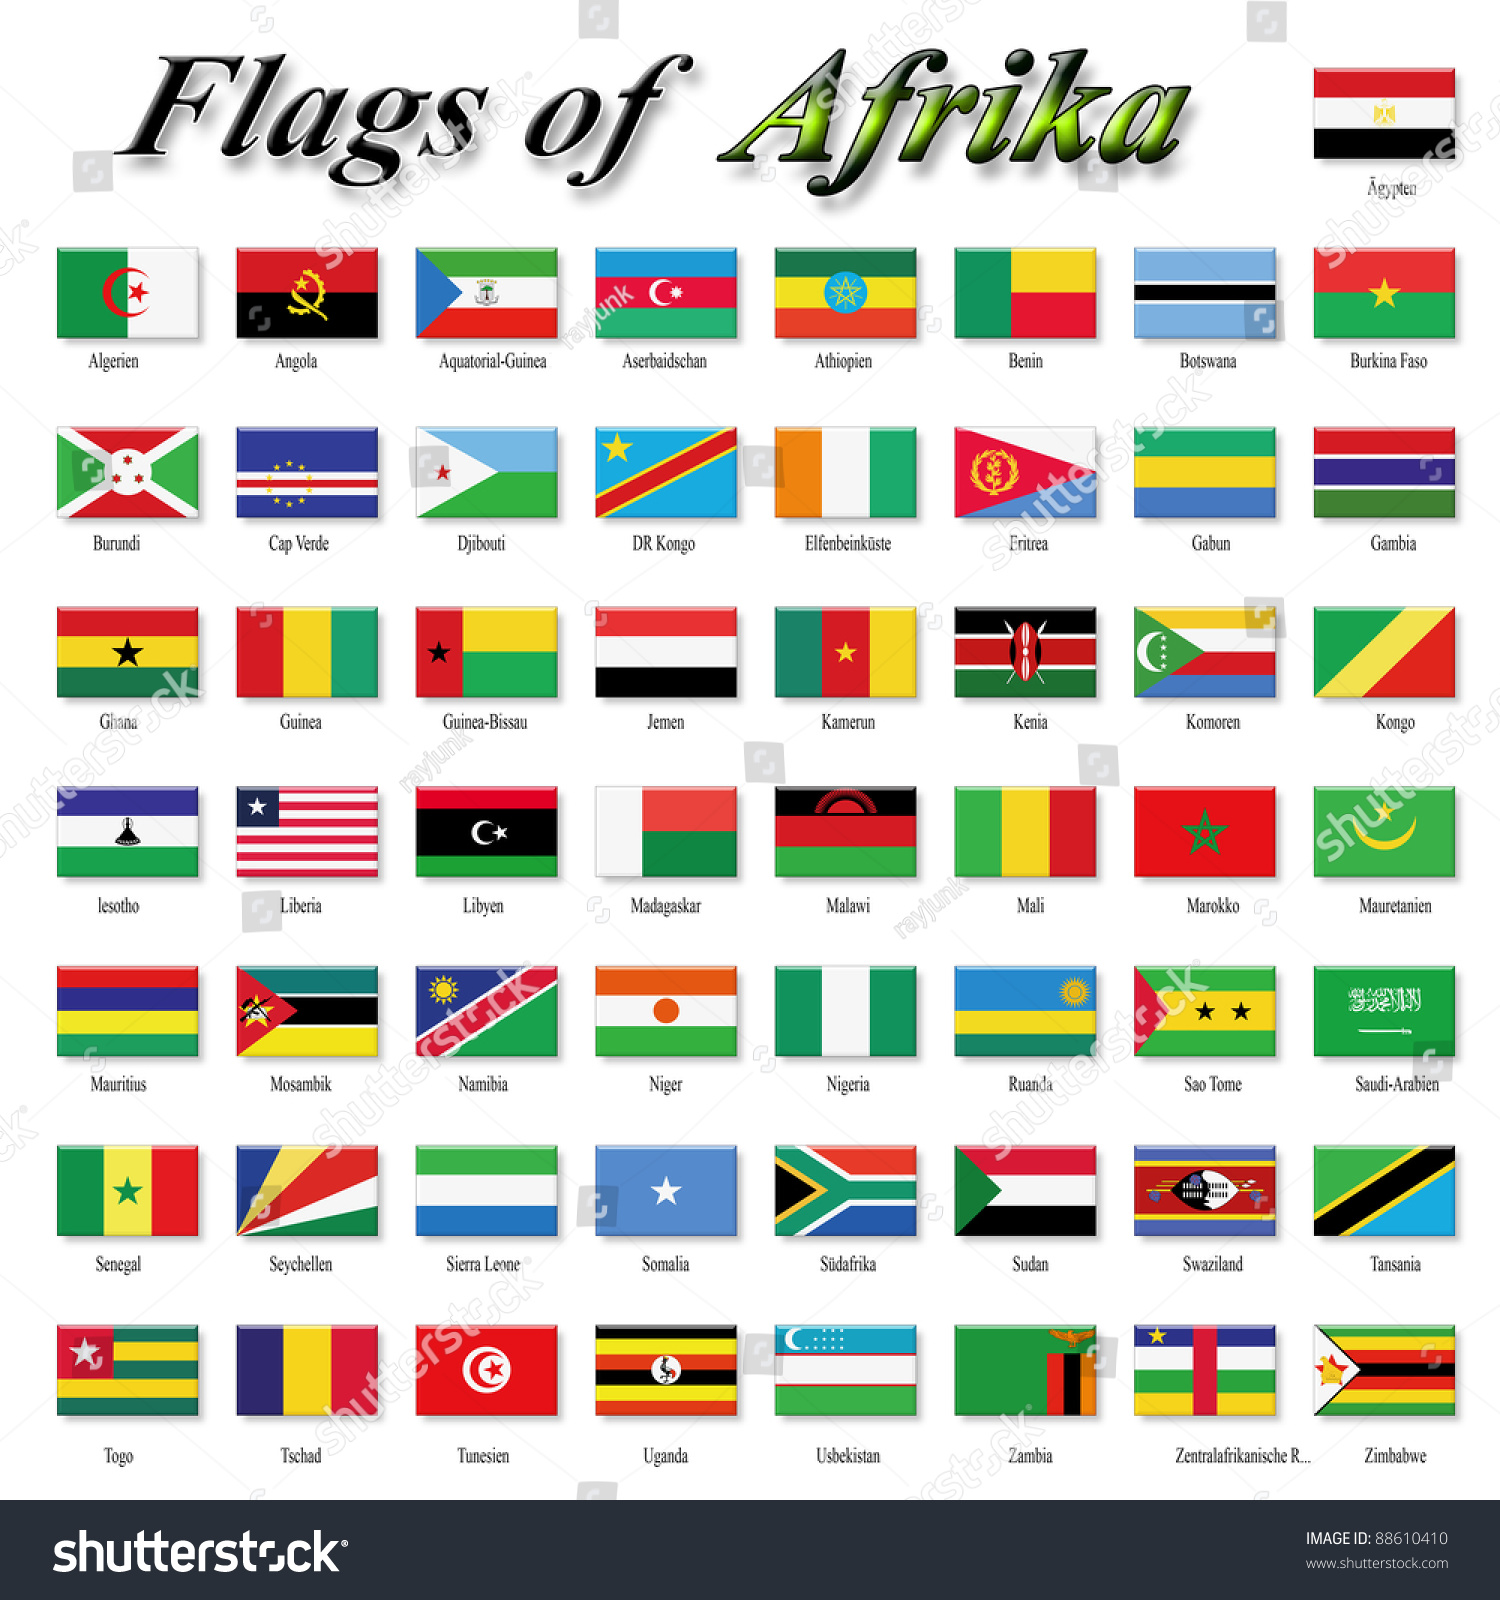 Флаги стран африки фото с названием на русском